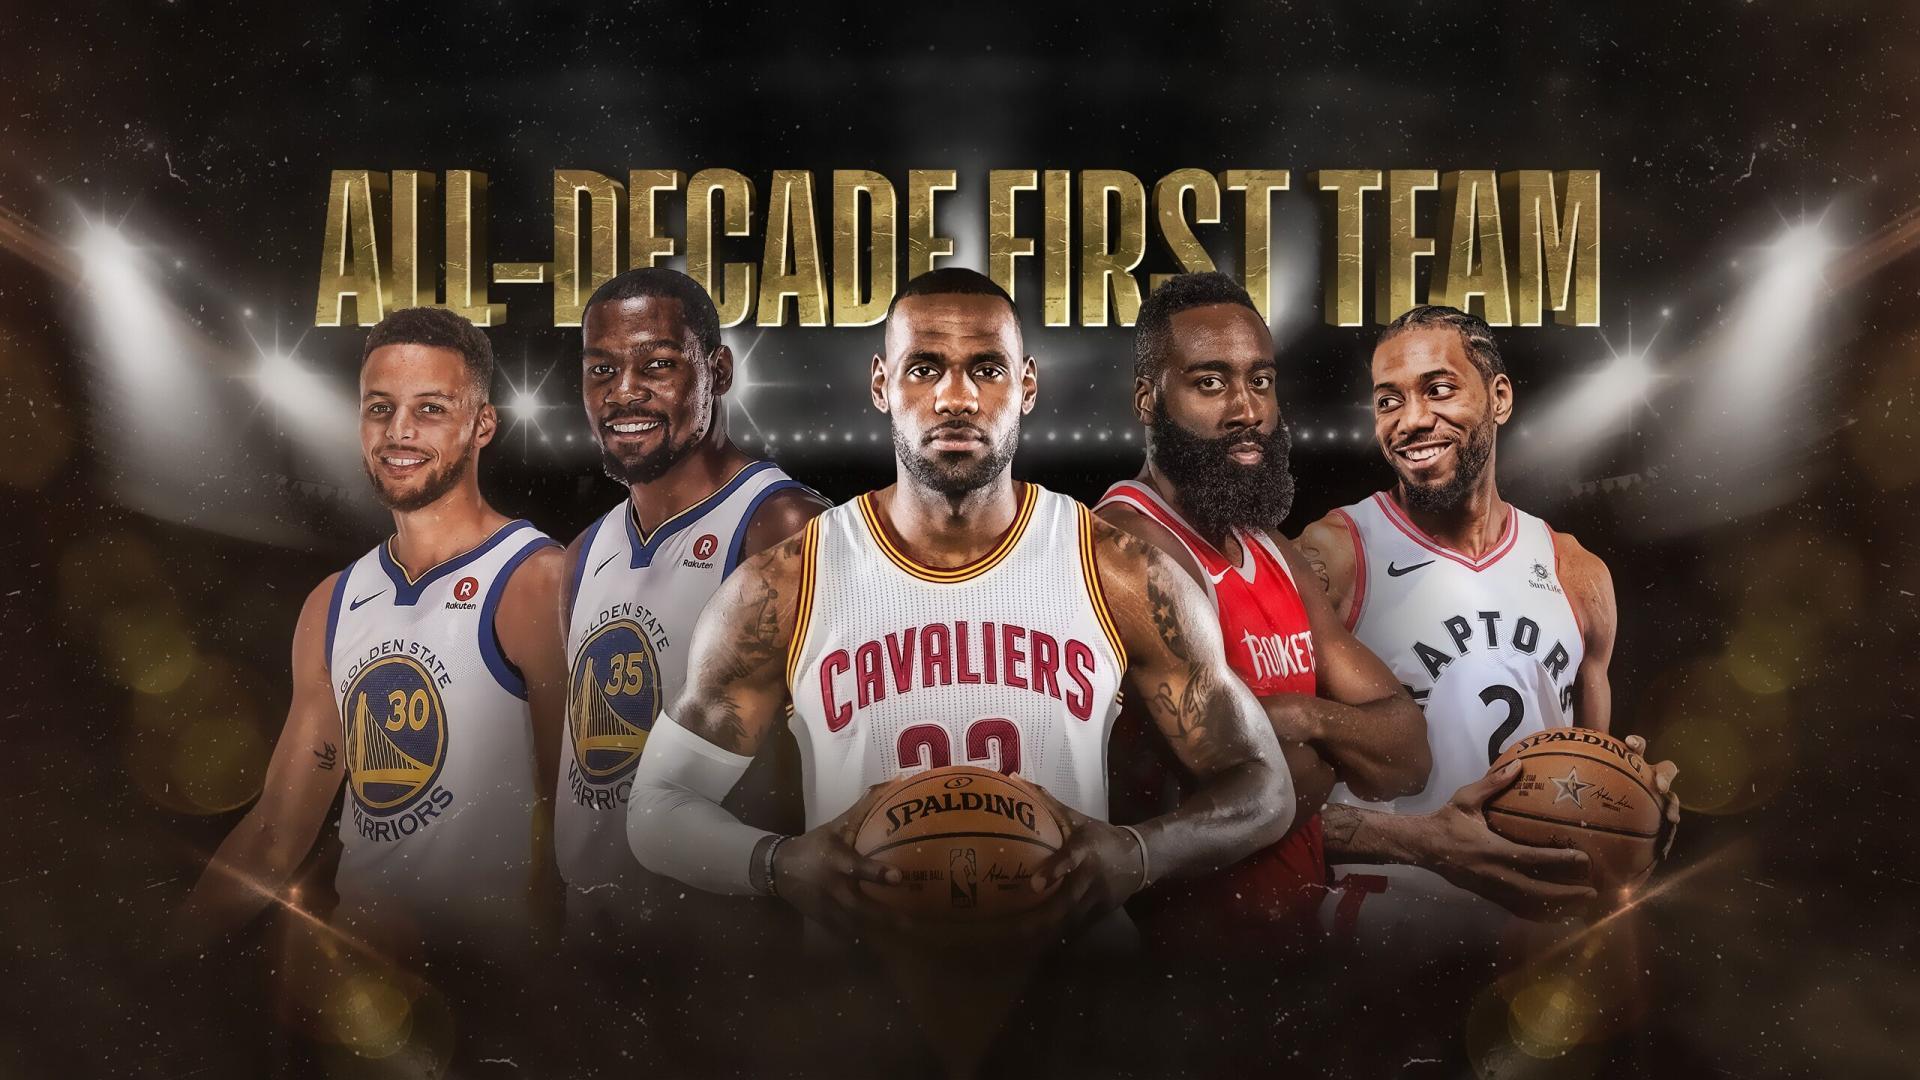 بسکتبال-تیم منتخب-NBA Basketball